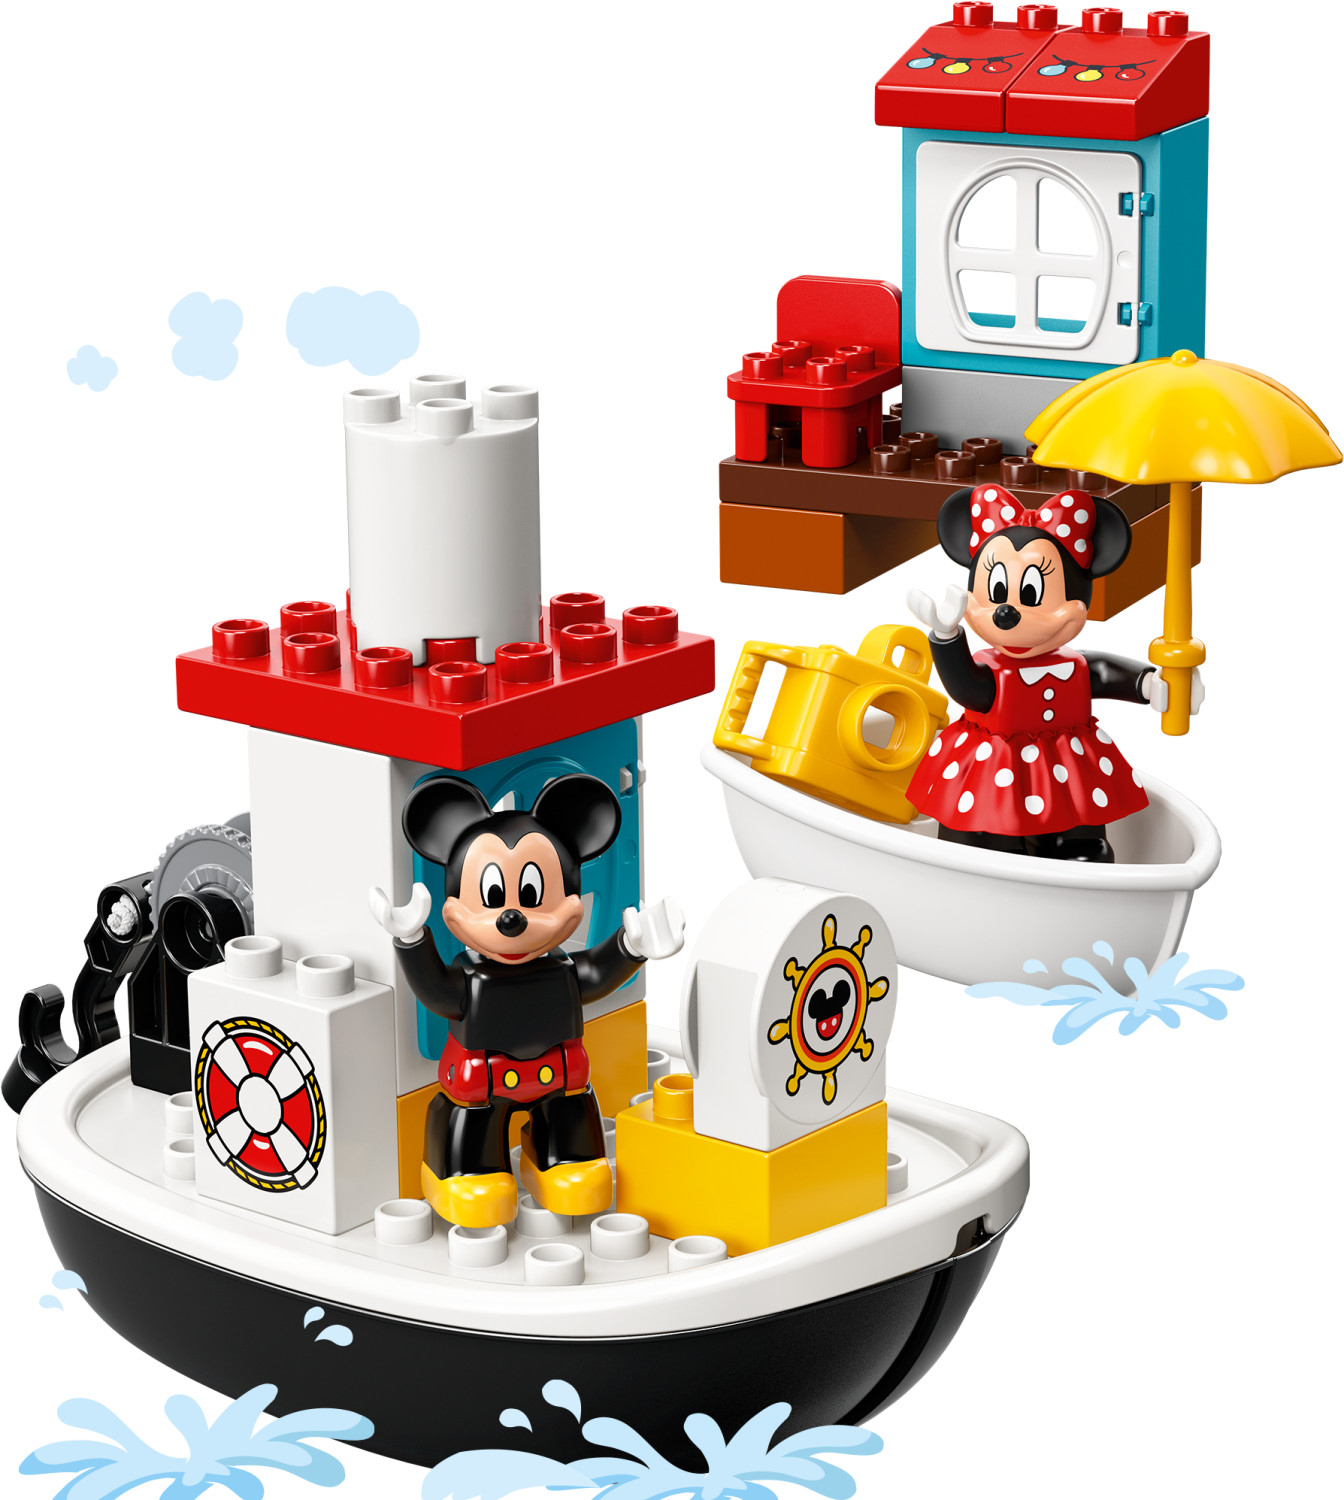 Lego Duplo - Le Bateau De Mickey (10881) Au Meilleur Prix Sur Idealo.fr dedans Bateau Mickey